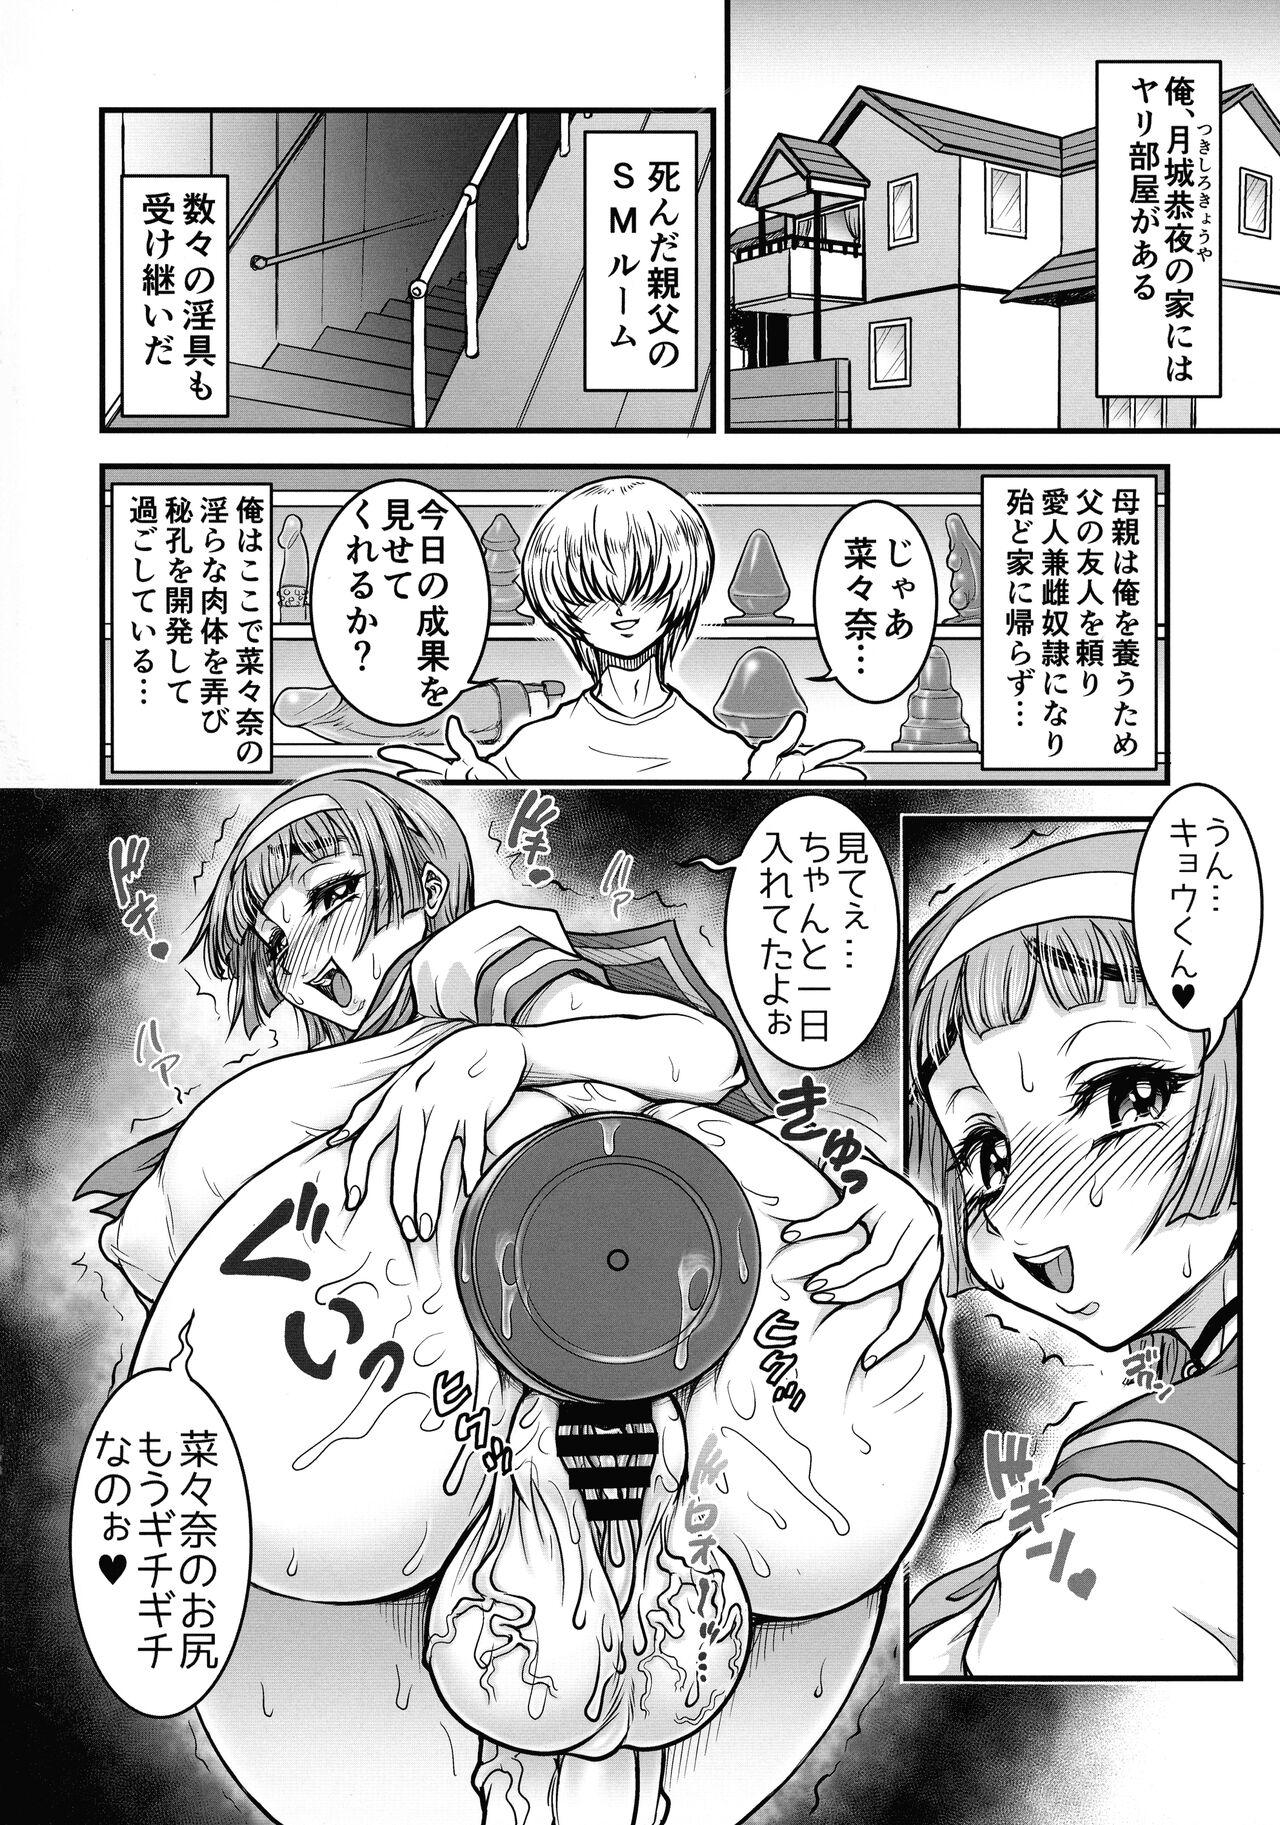 Sis Futanari Kanojo Culo Grande - Page 4